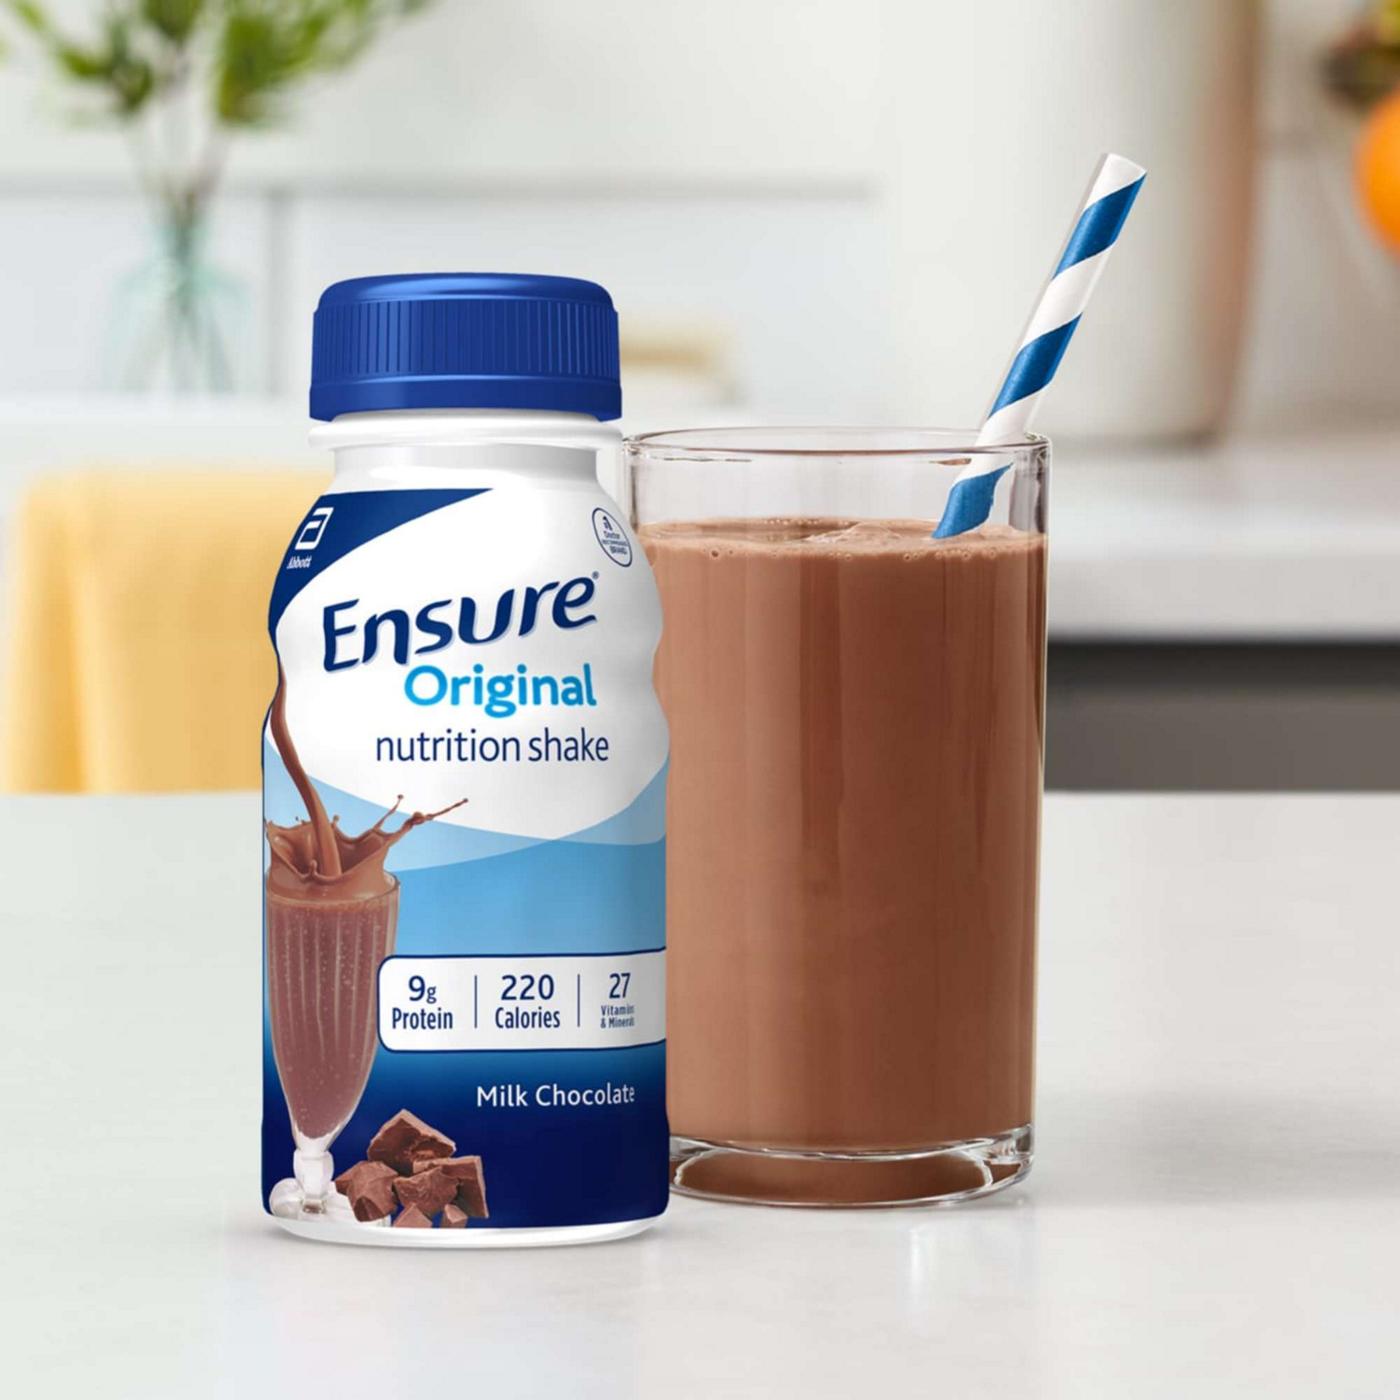 Ensure Original Nutrition Shake - Milk Chocolate; image 4 of 10